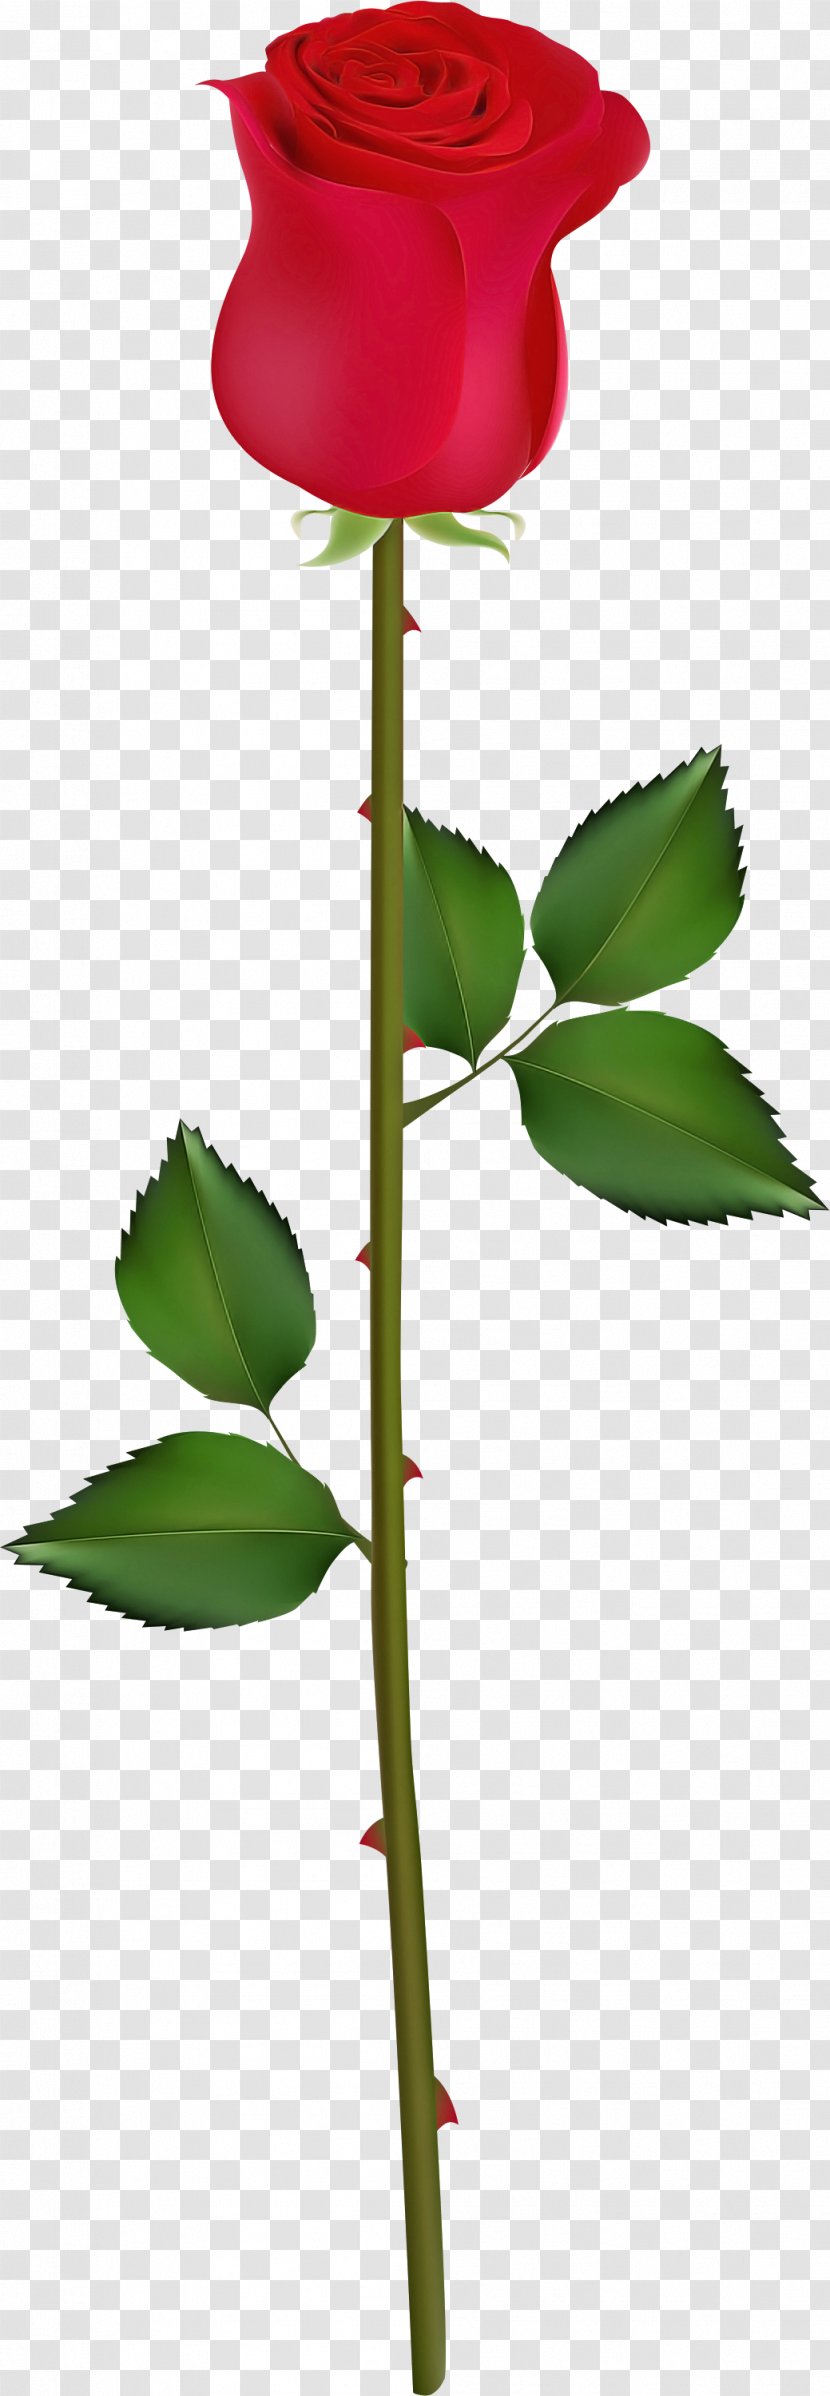 Flower Leaf Plant Flowering Stem - Tree Transparent PNG